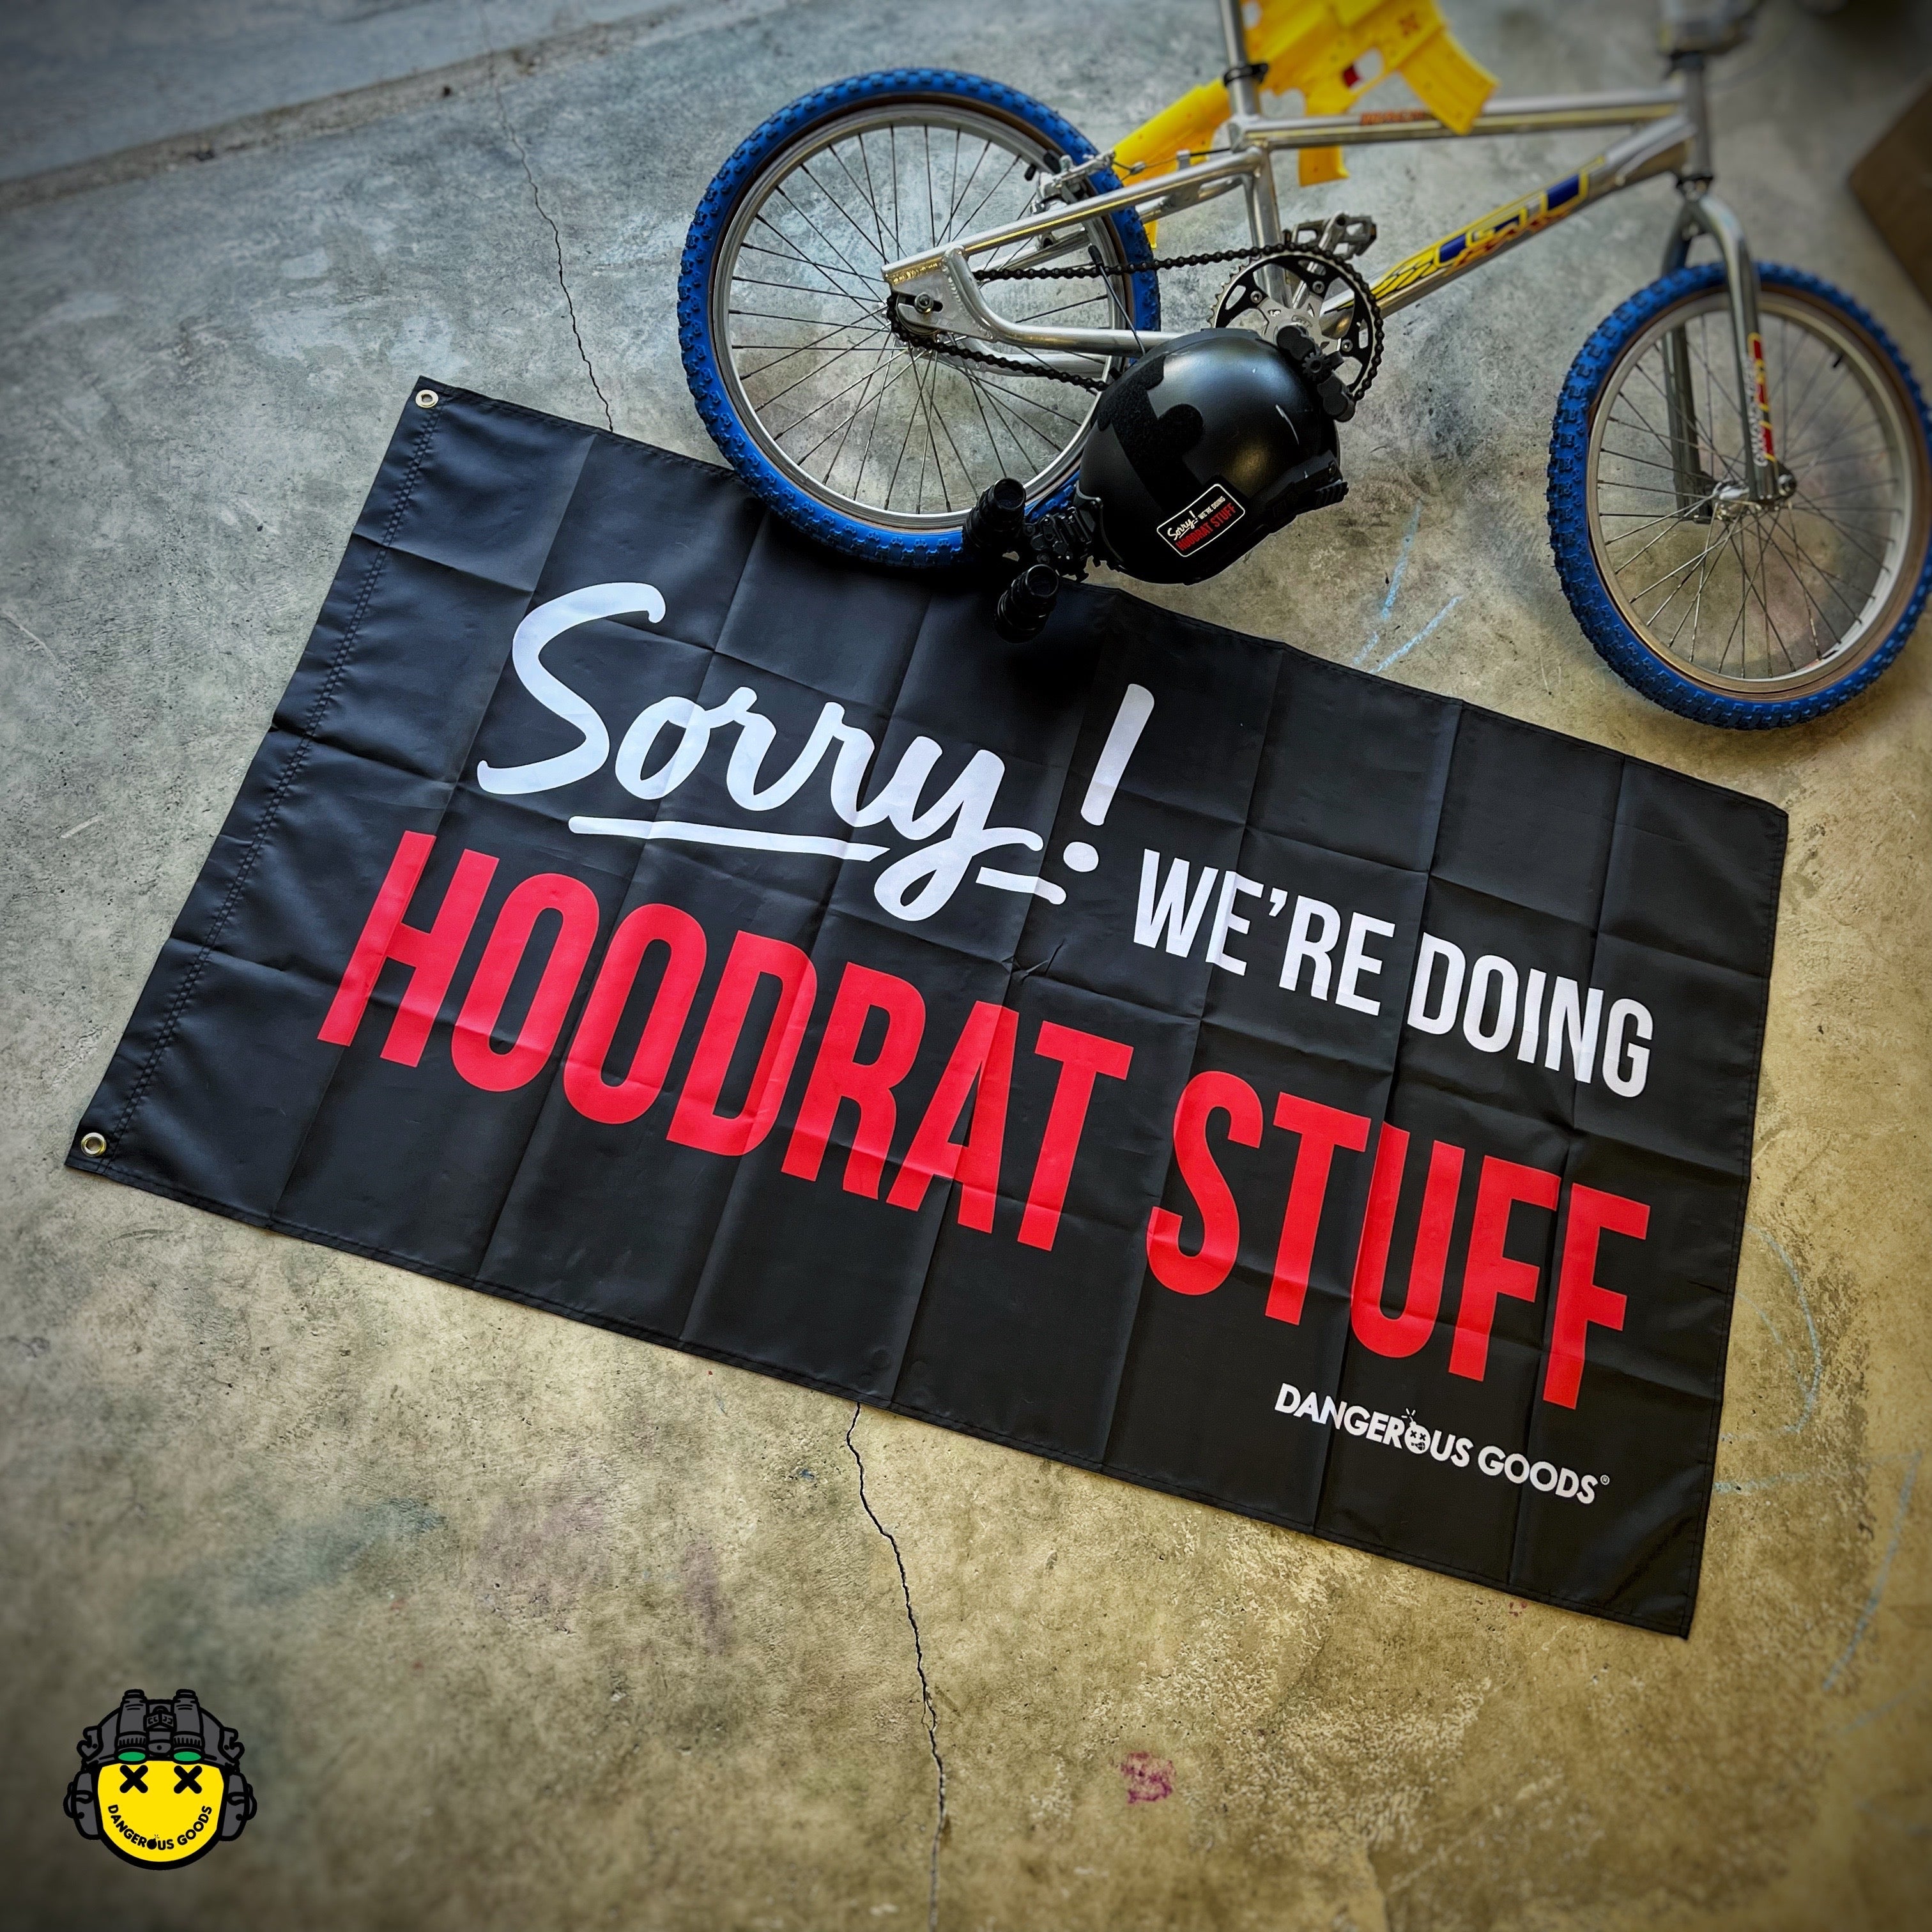 NEW Dangerous Goods® Sorry We’re Doing Hoodrat Stuff Flag - 3 foot x 5 foot